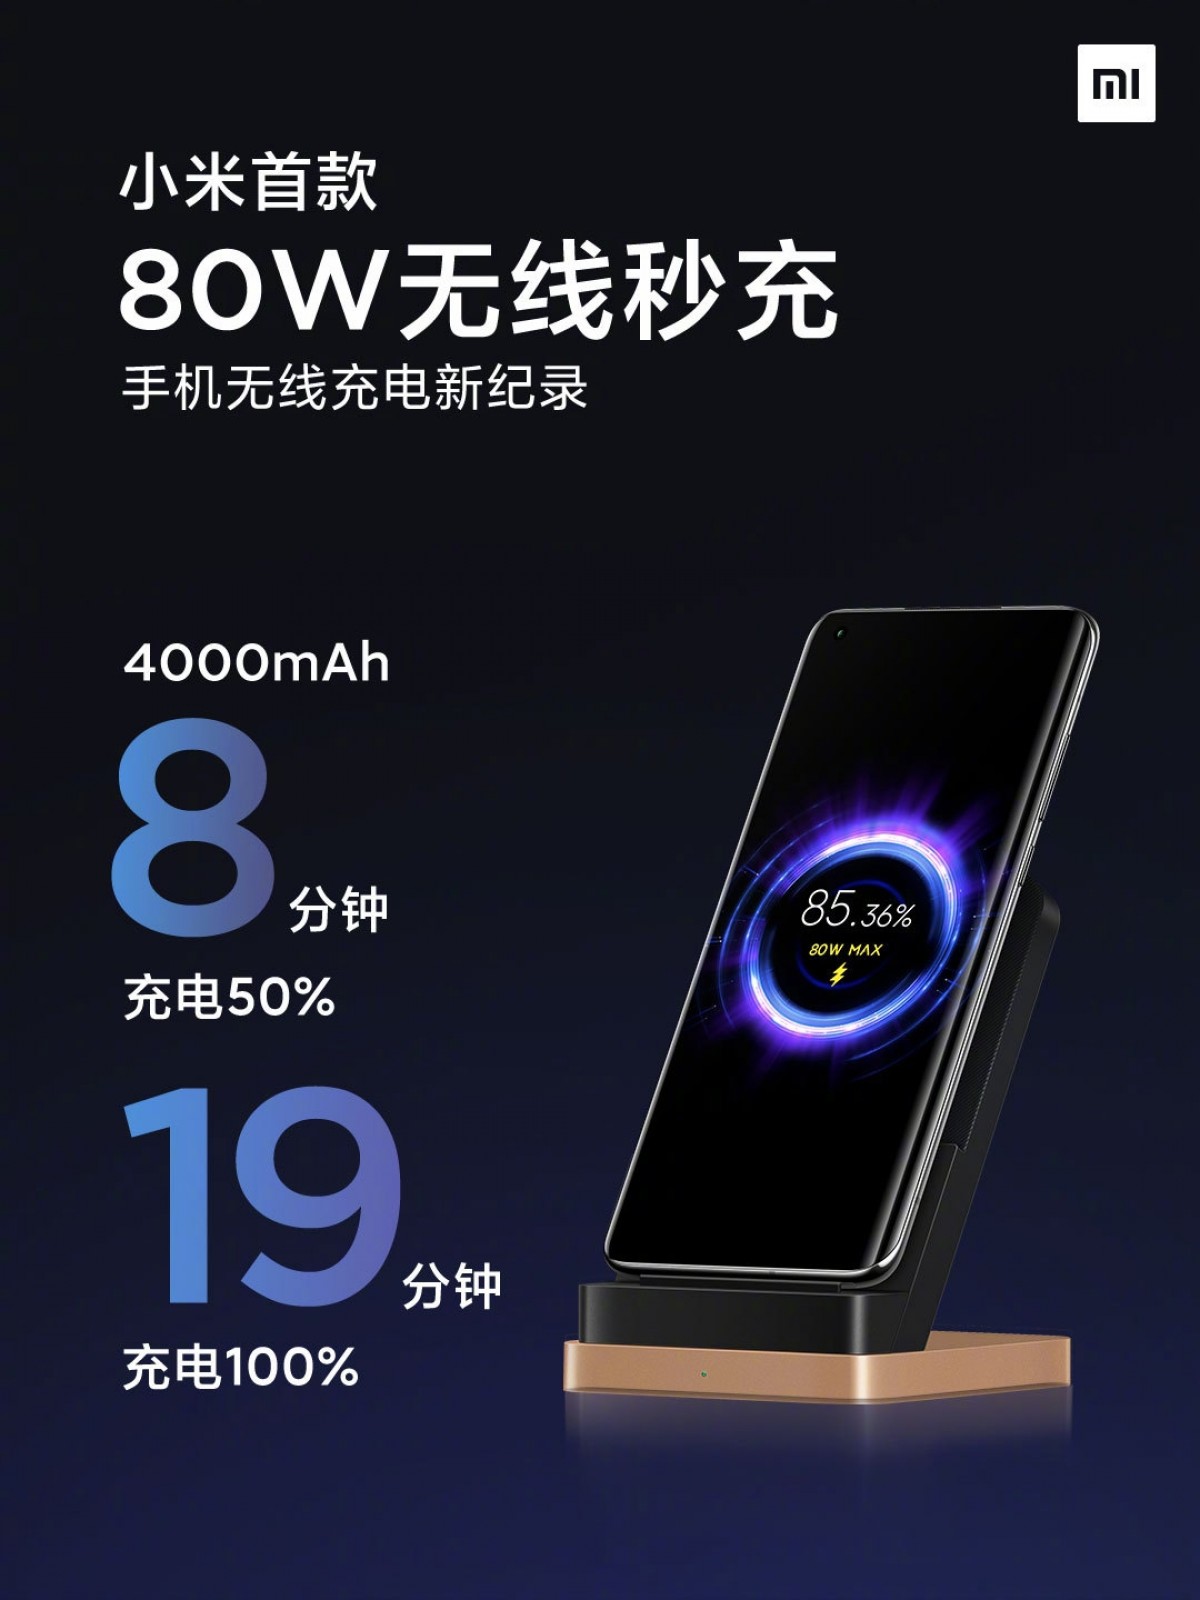 Xiaomi 80W Wireless Charger